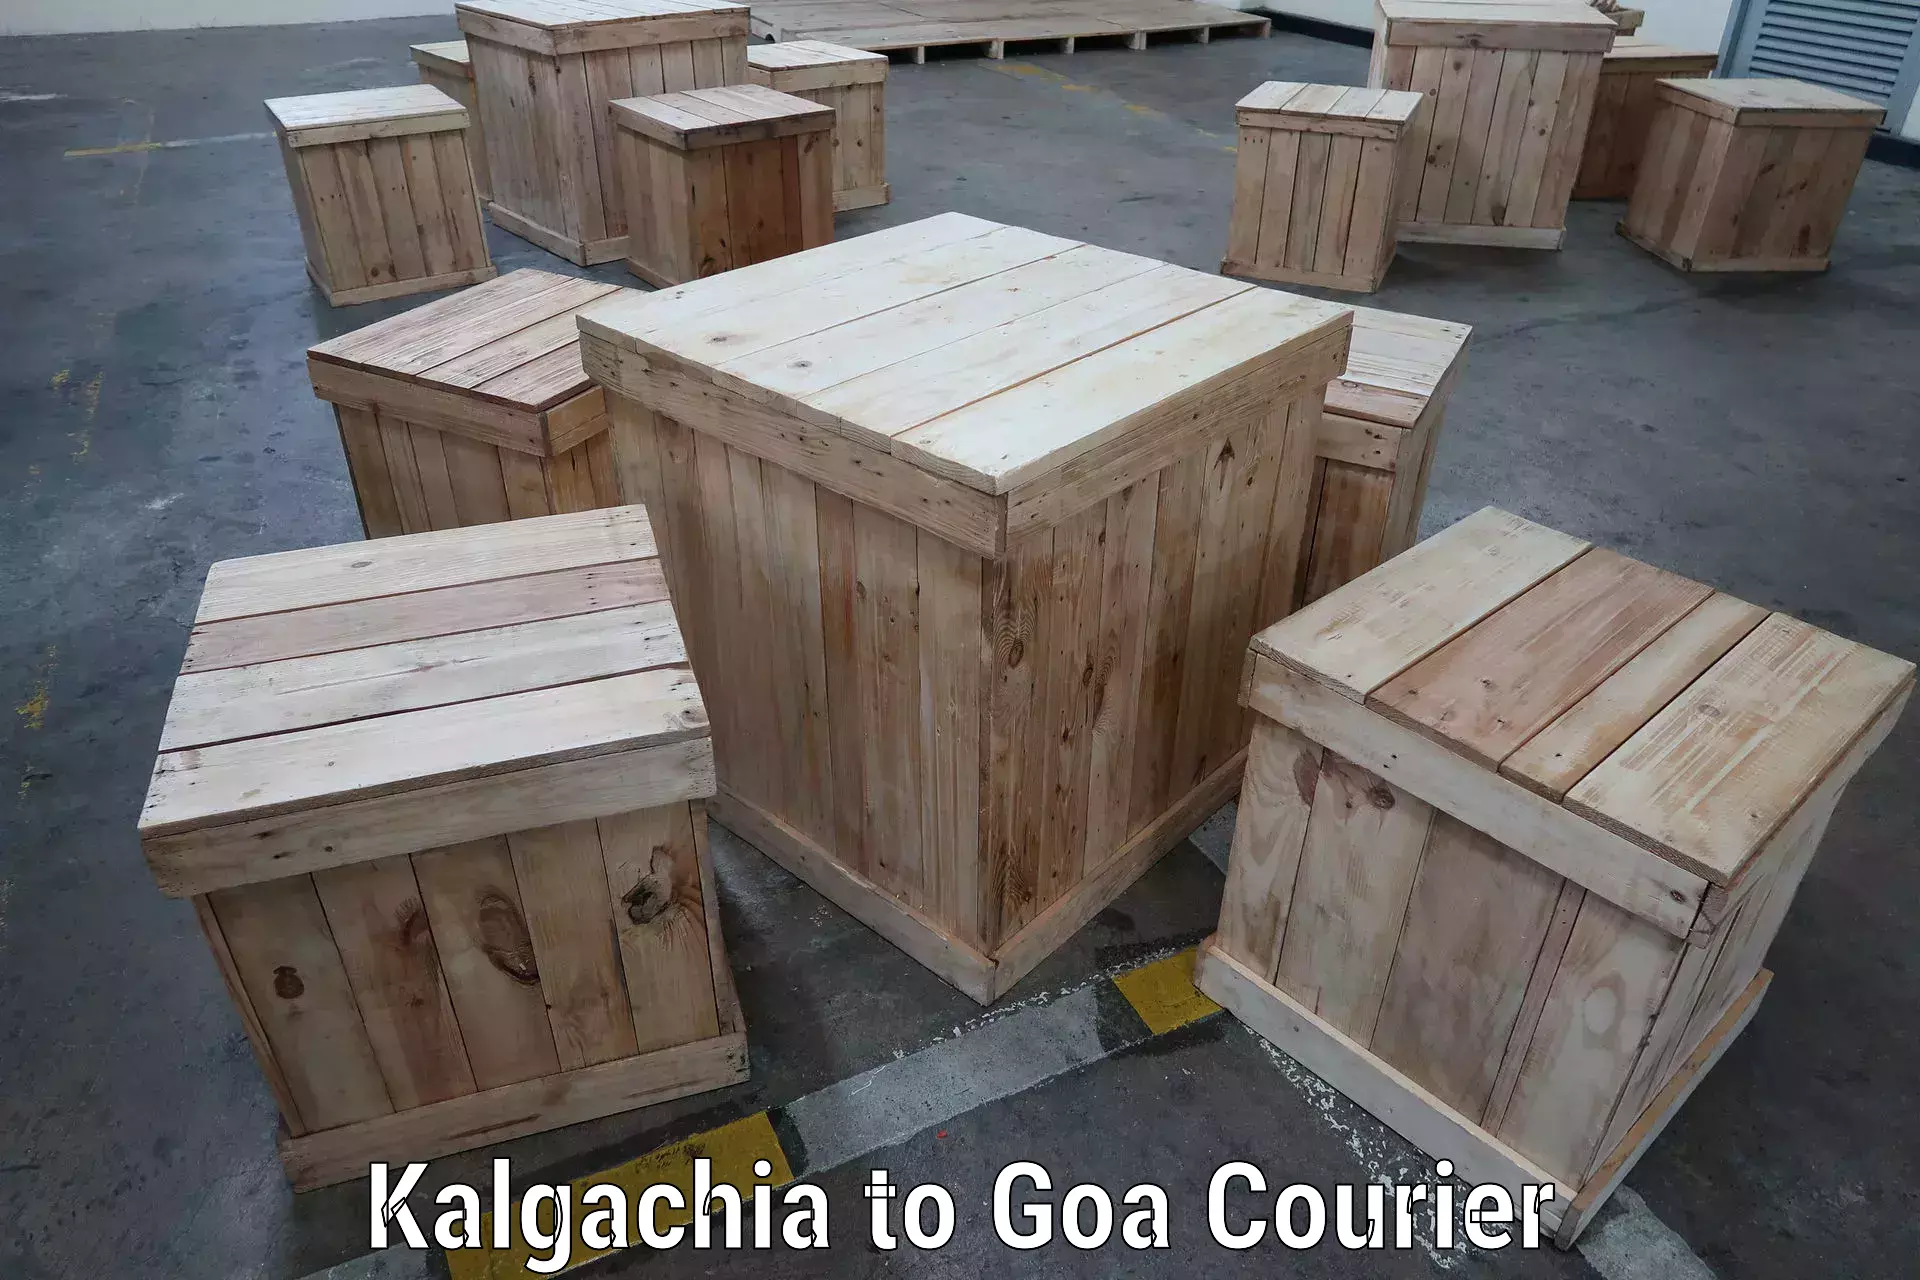 Door-to-door freight service in Kalgachia to South Goa